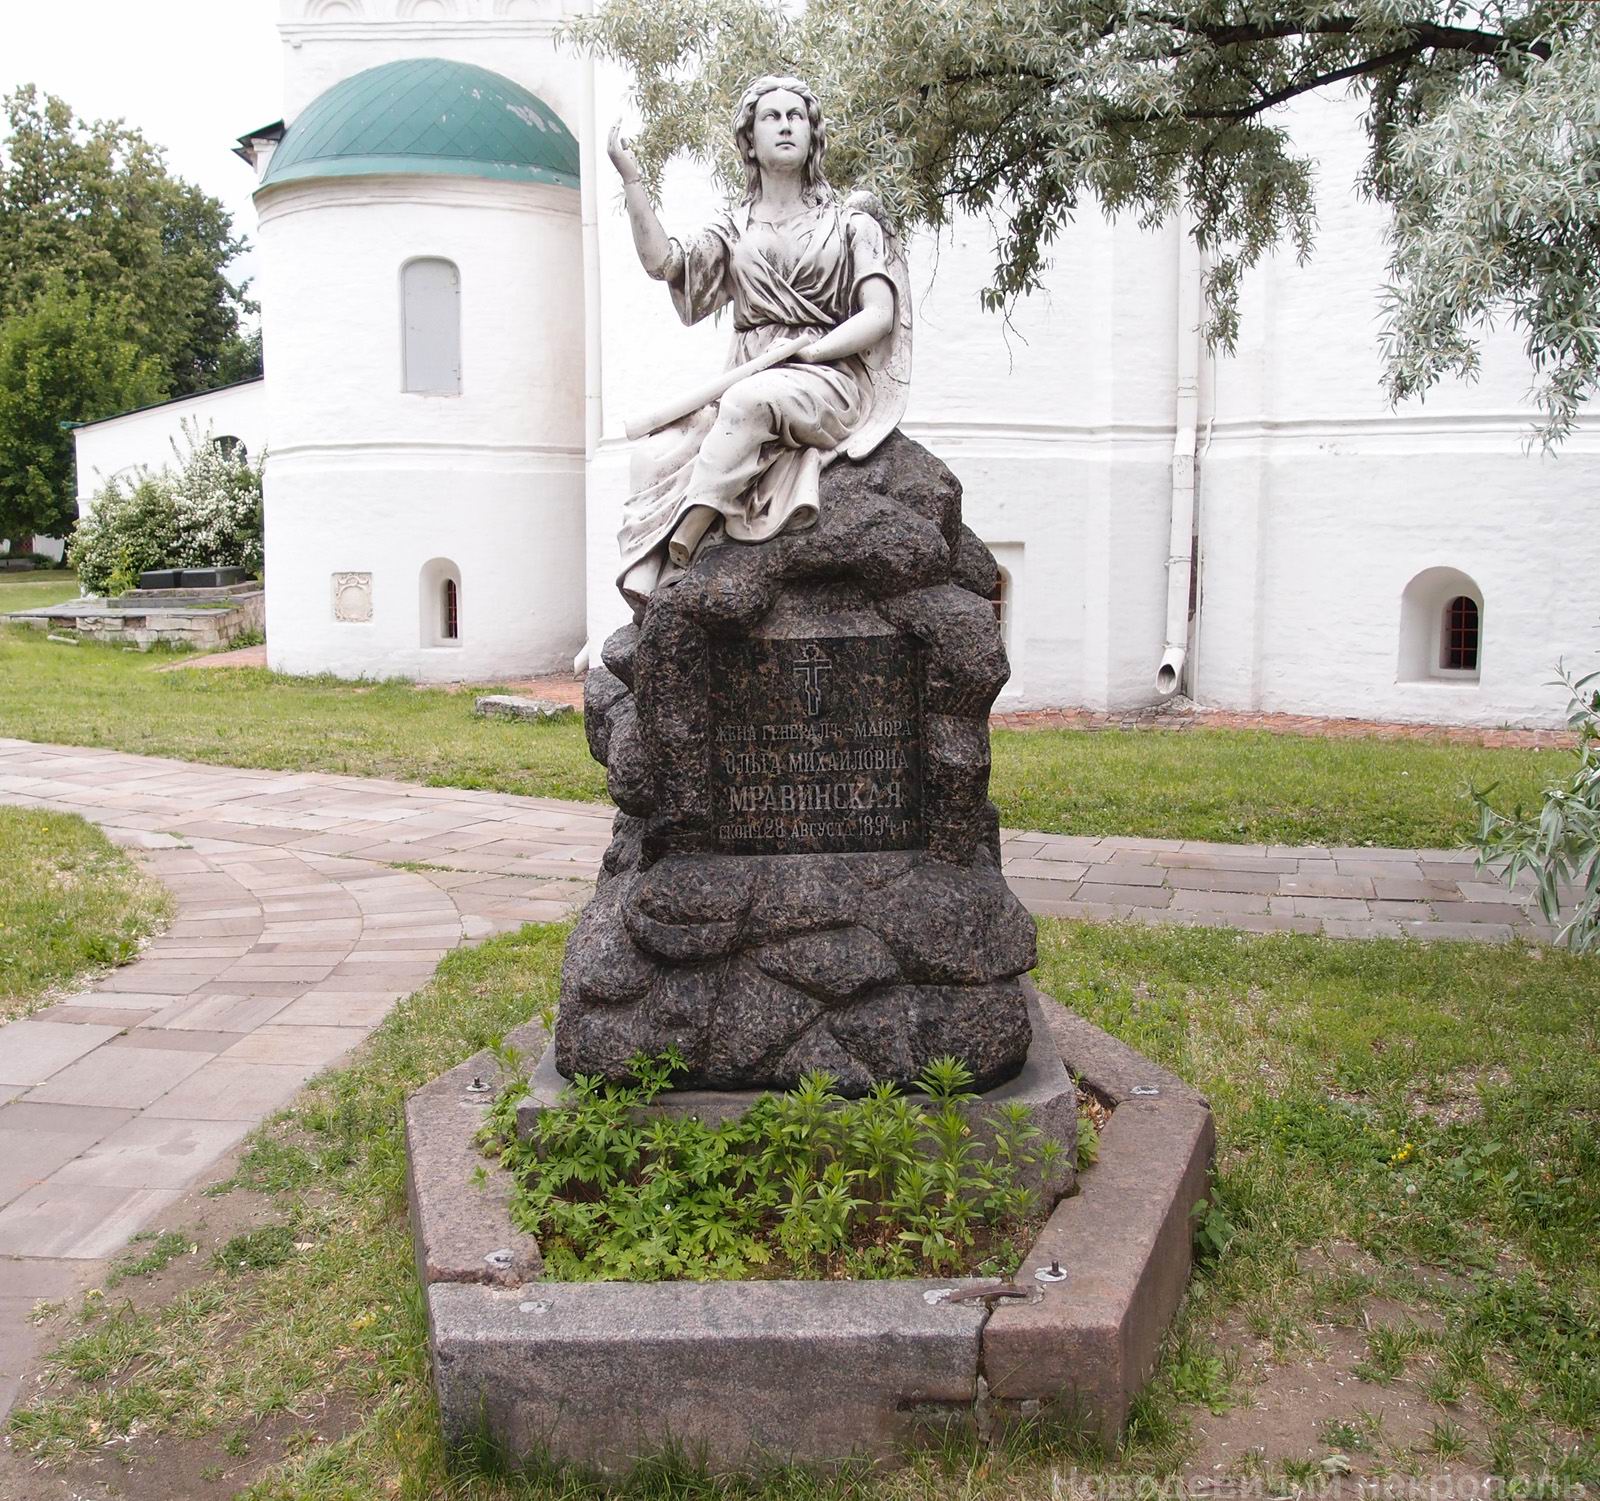 Памятник на могиле Мравинской О.М. (1844–1894), в Новодевичьем монастыре. Нажмите левую кнопку мыши, чтобы увидеть памятник сбоку.